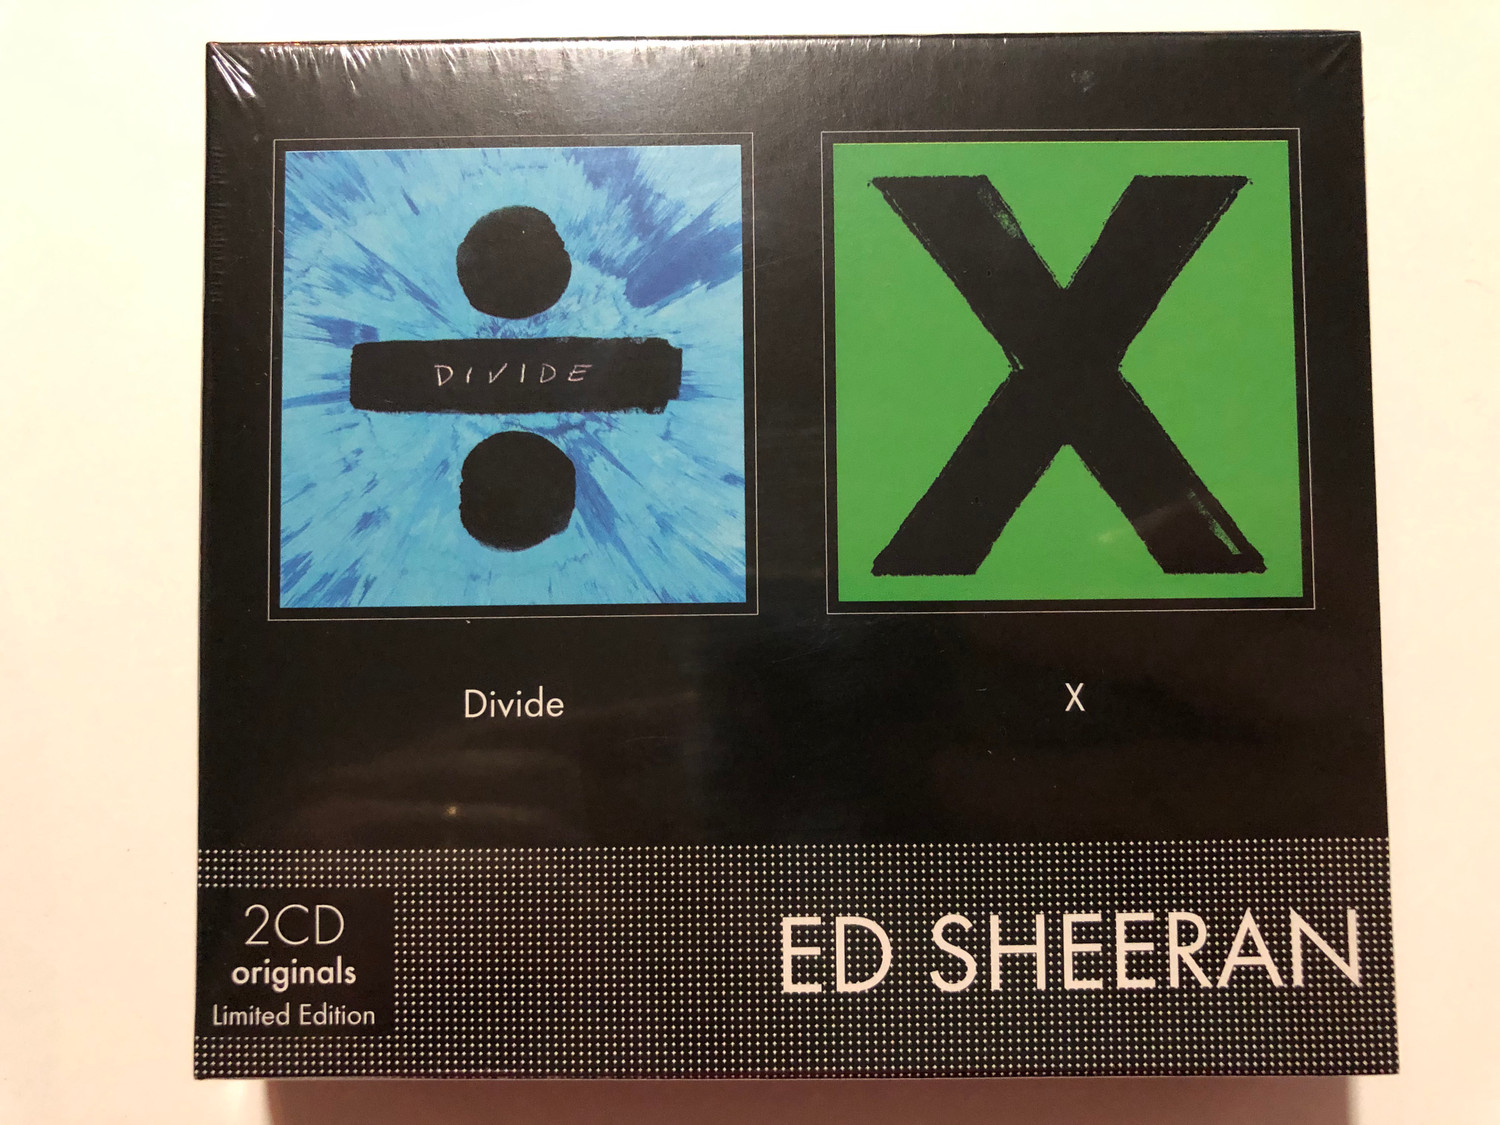 Ed Sheeran - ÷ Divide